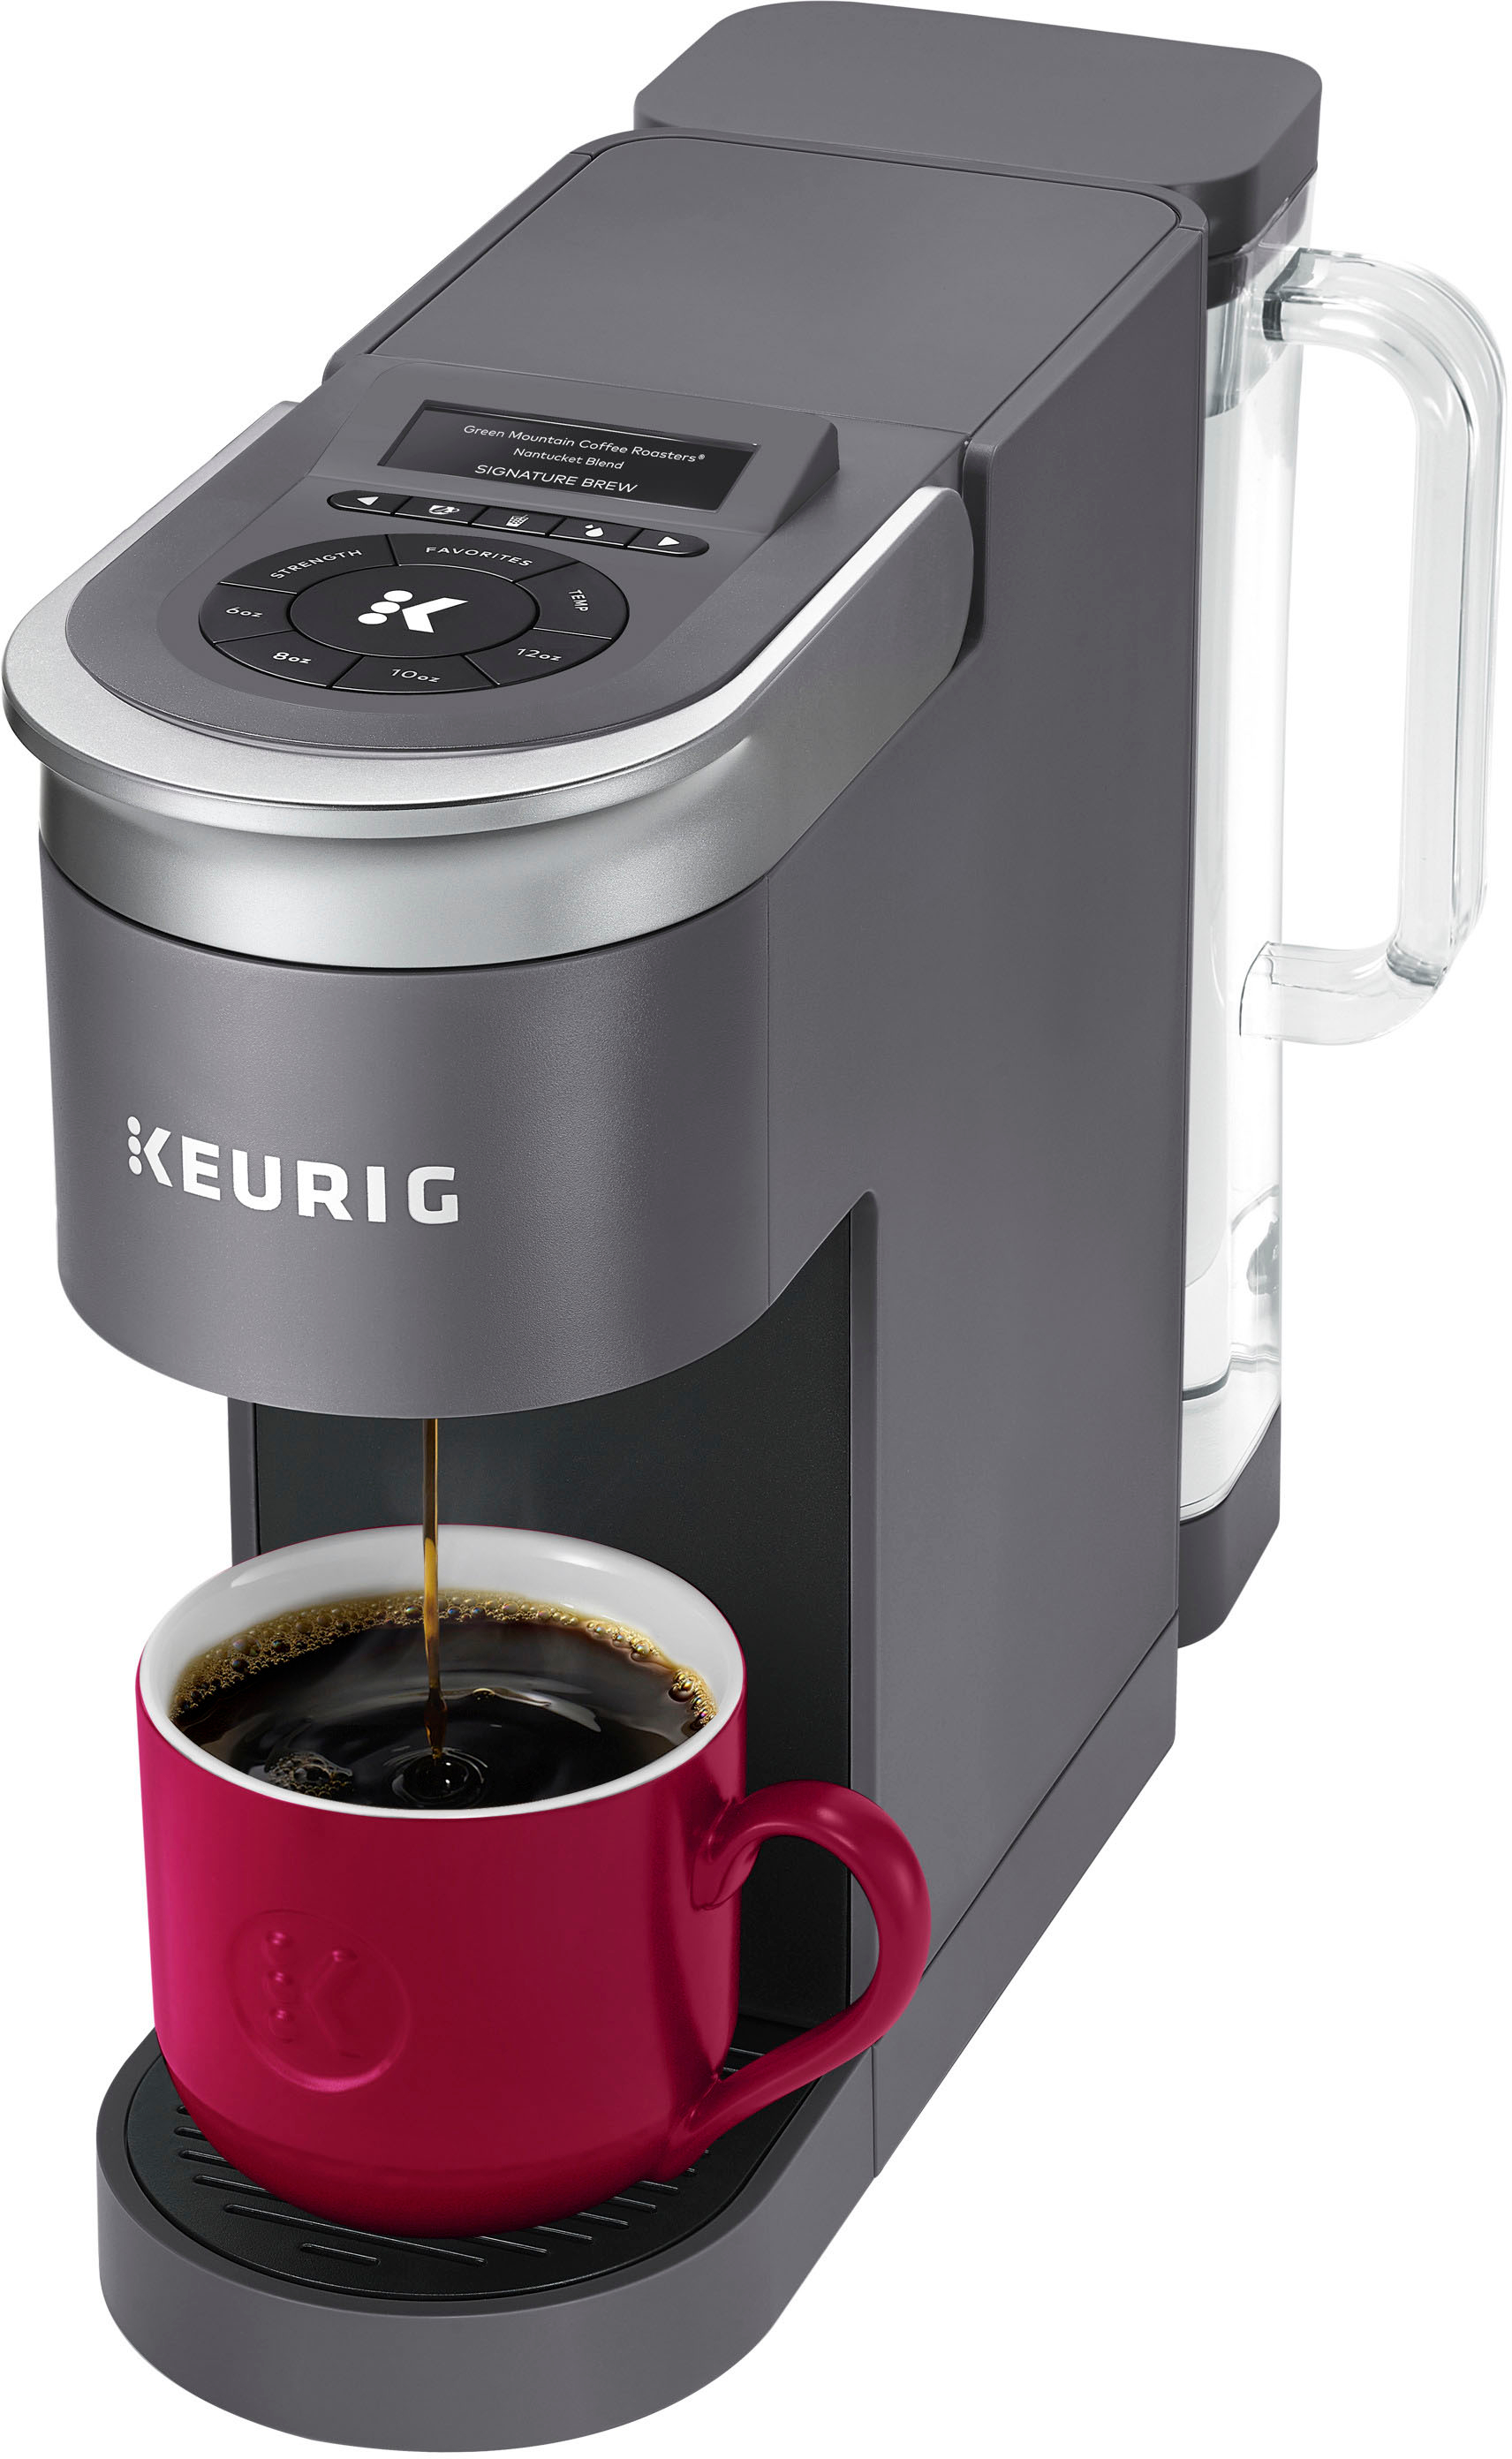 Keurig Coffee Makers - Best Buy